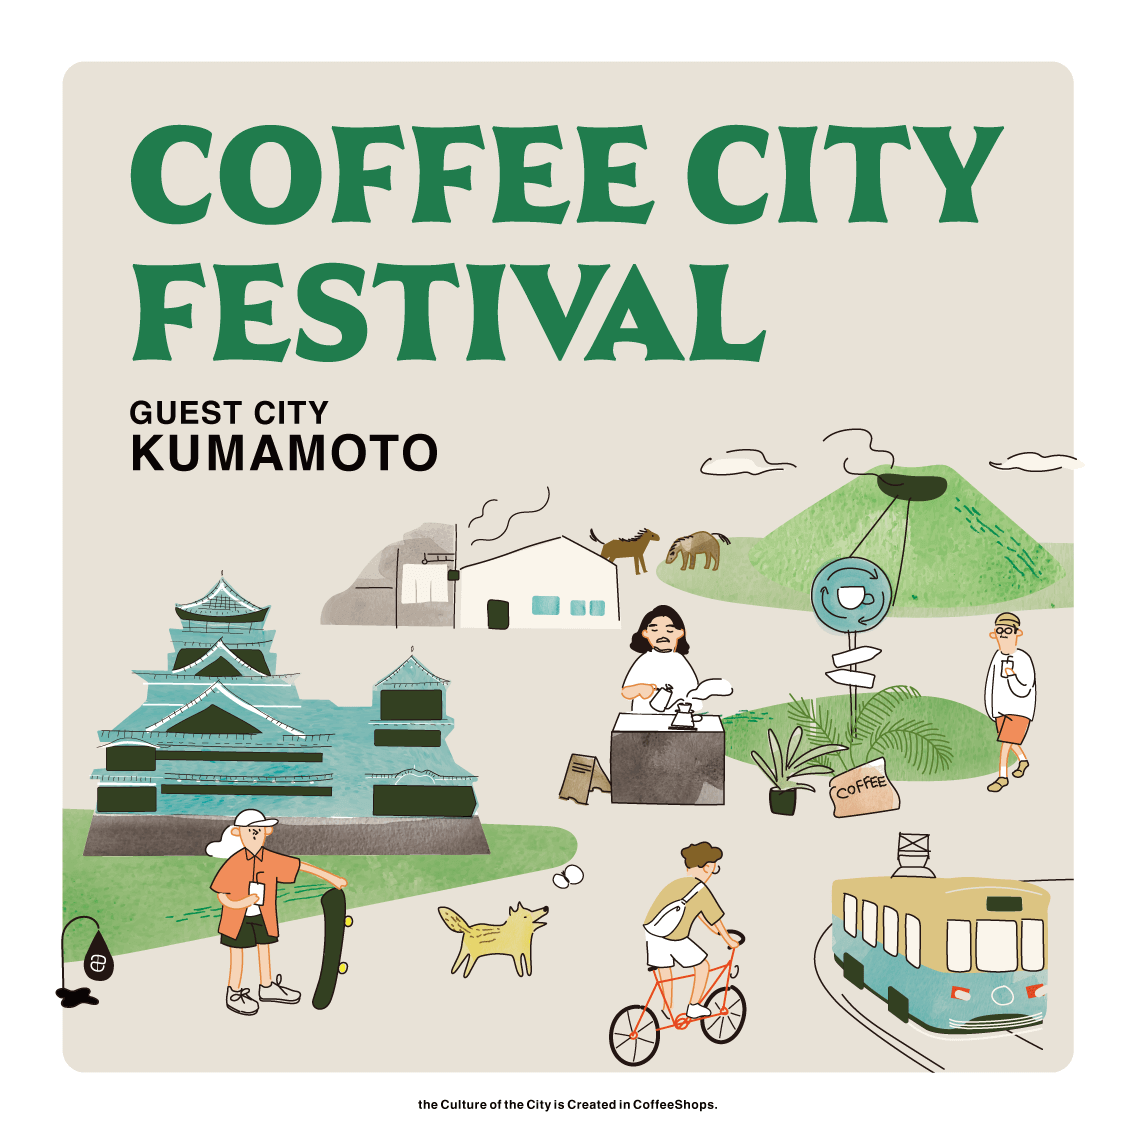 札幌パルコの『COFFEE CITY FESTIVAL SAPPORO』